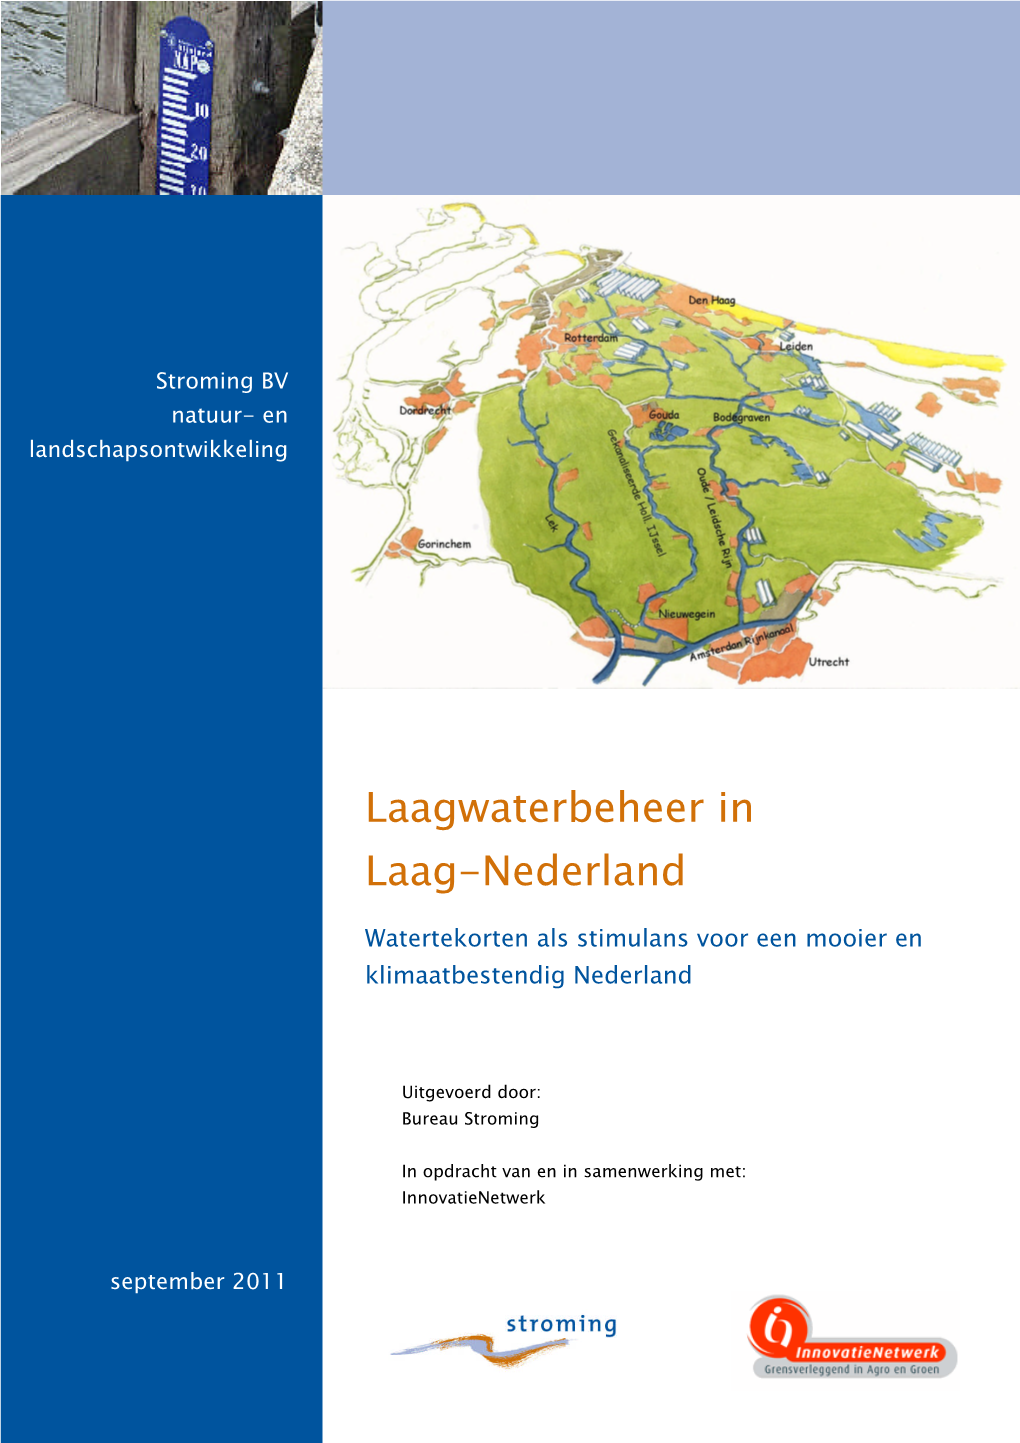 Laagwaterbeheer in Laag-Nederland